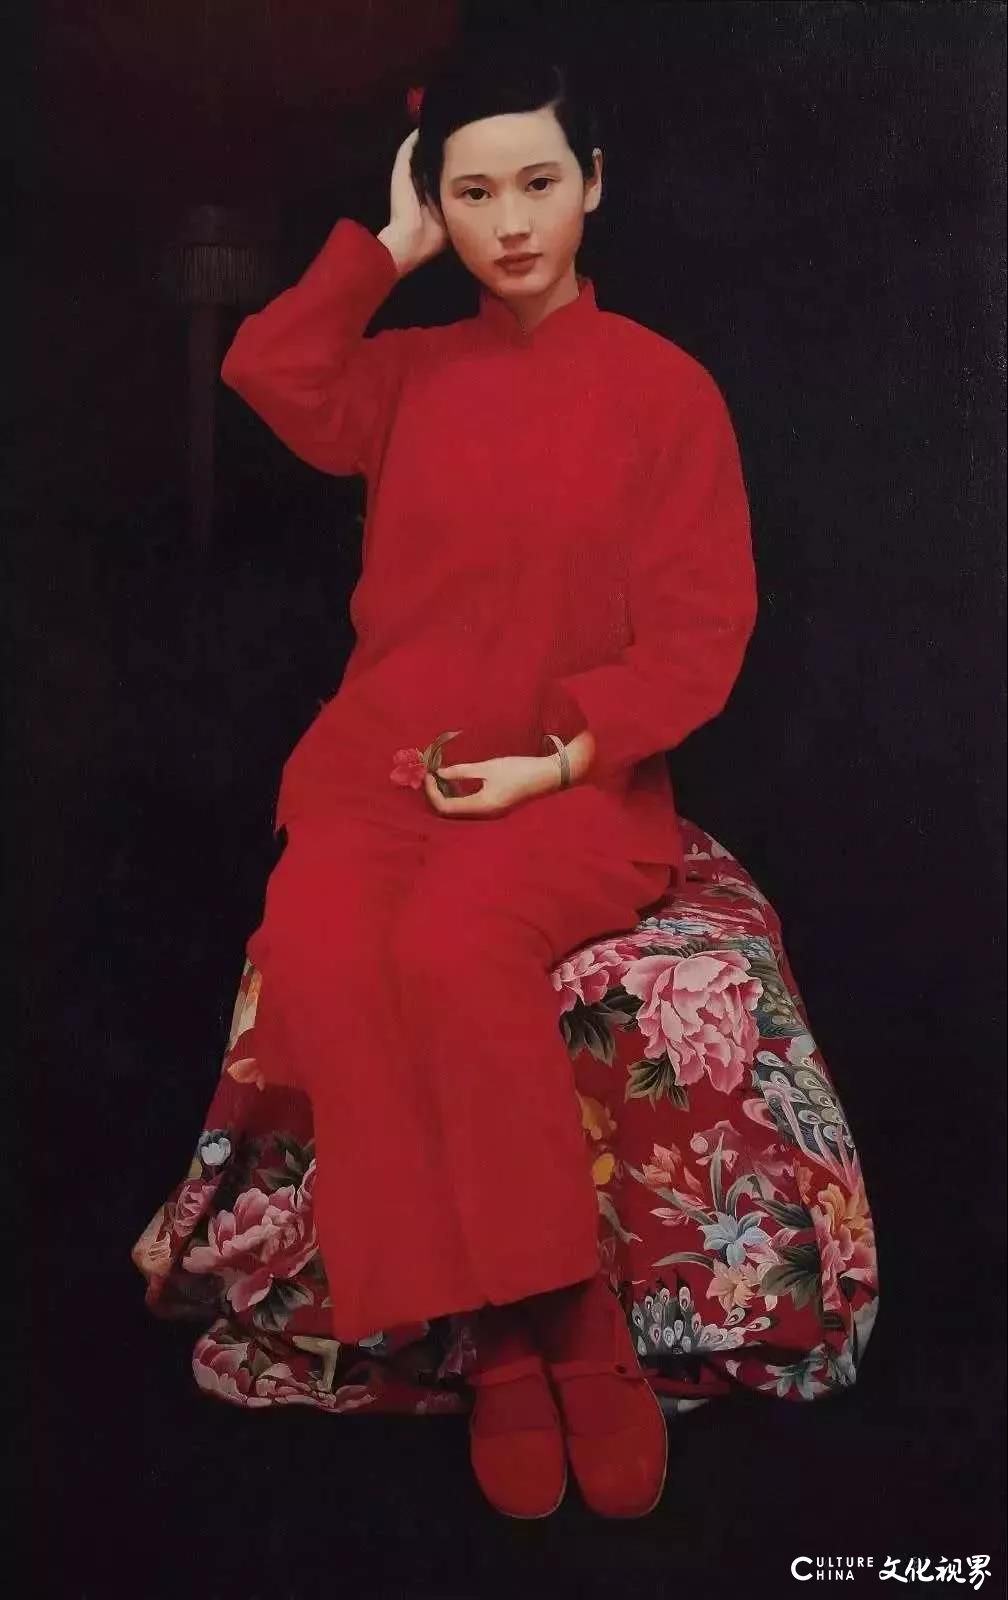 “执着的理想主义者”，王沂东与他钟爱的写实人物油画